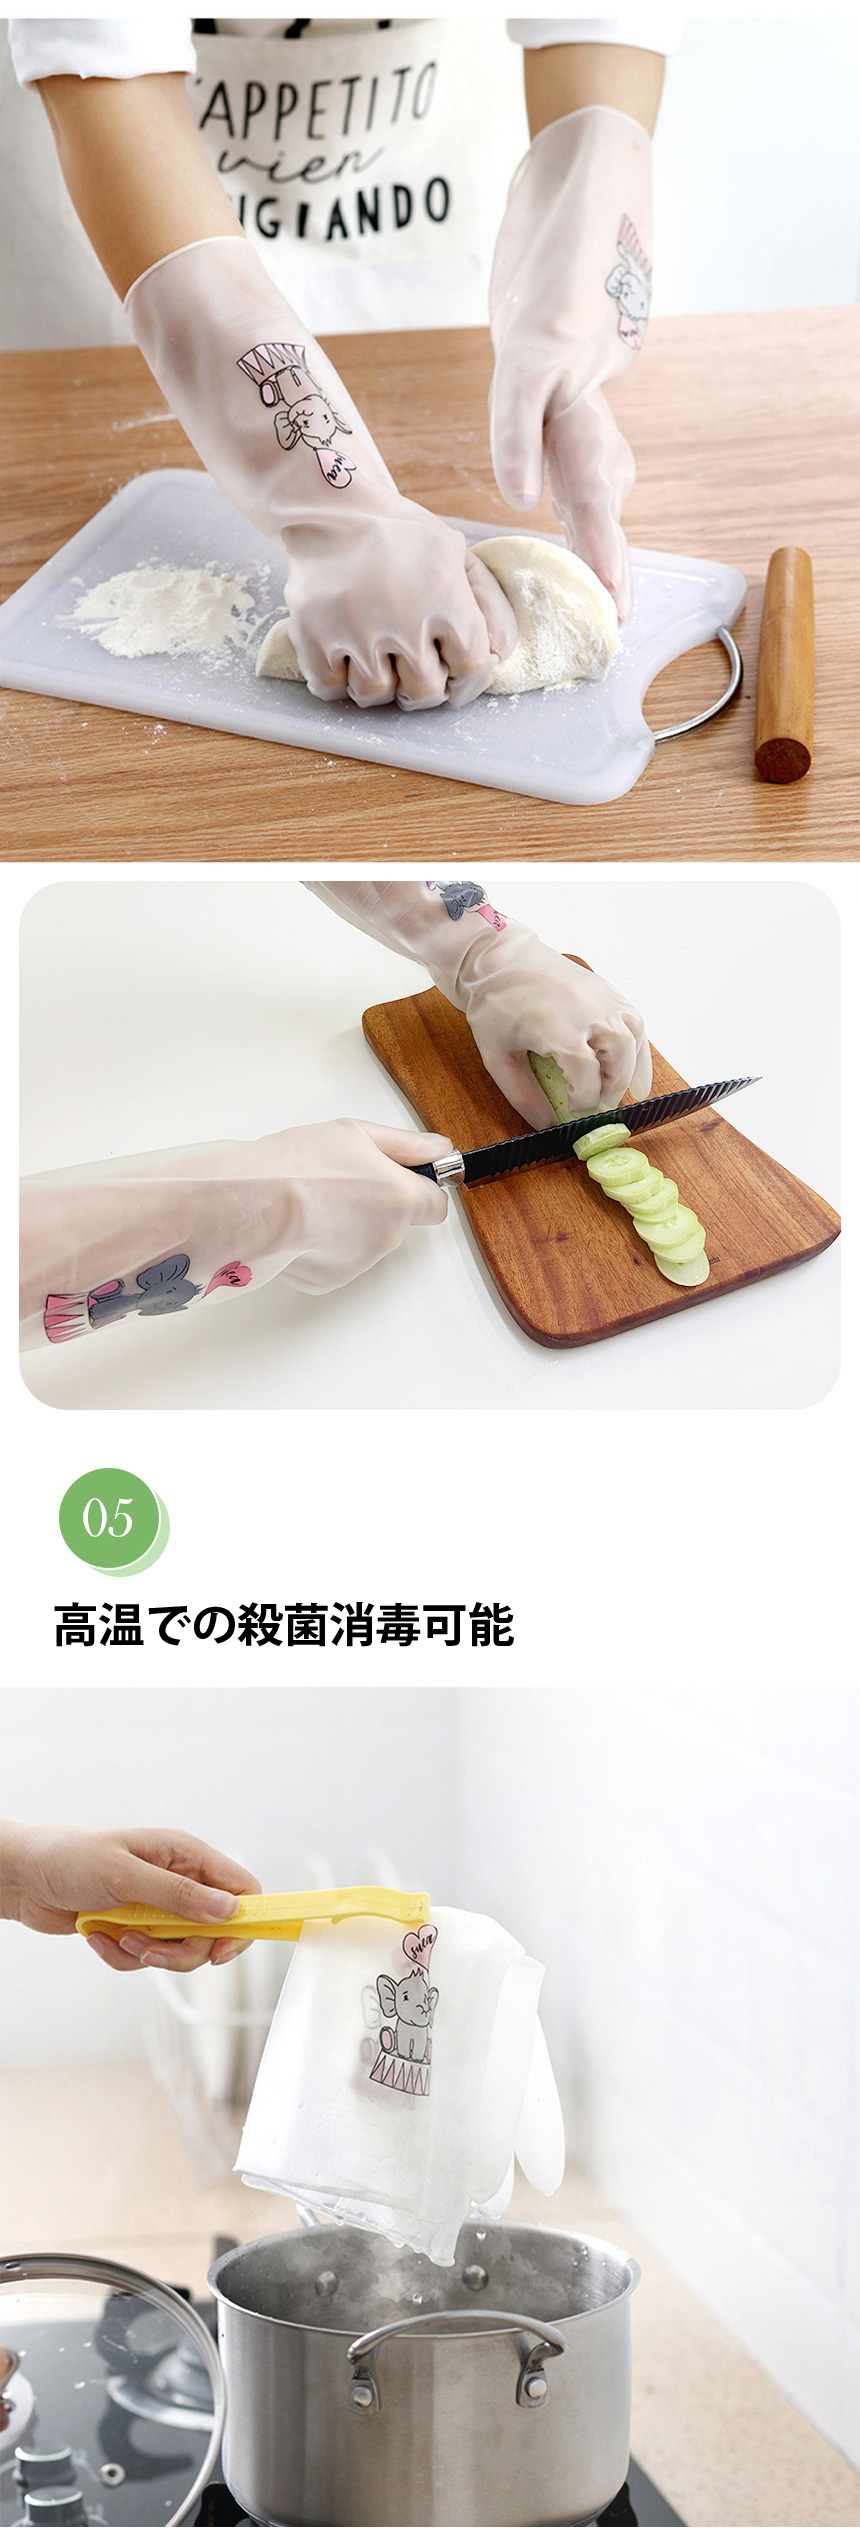 韓国万能タイプ ニトリル ゴム手袋 ニトリルグローブ/ 引っ張り・突き刺し・耐摩耗性